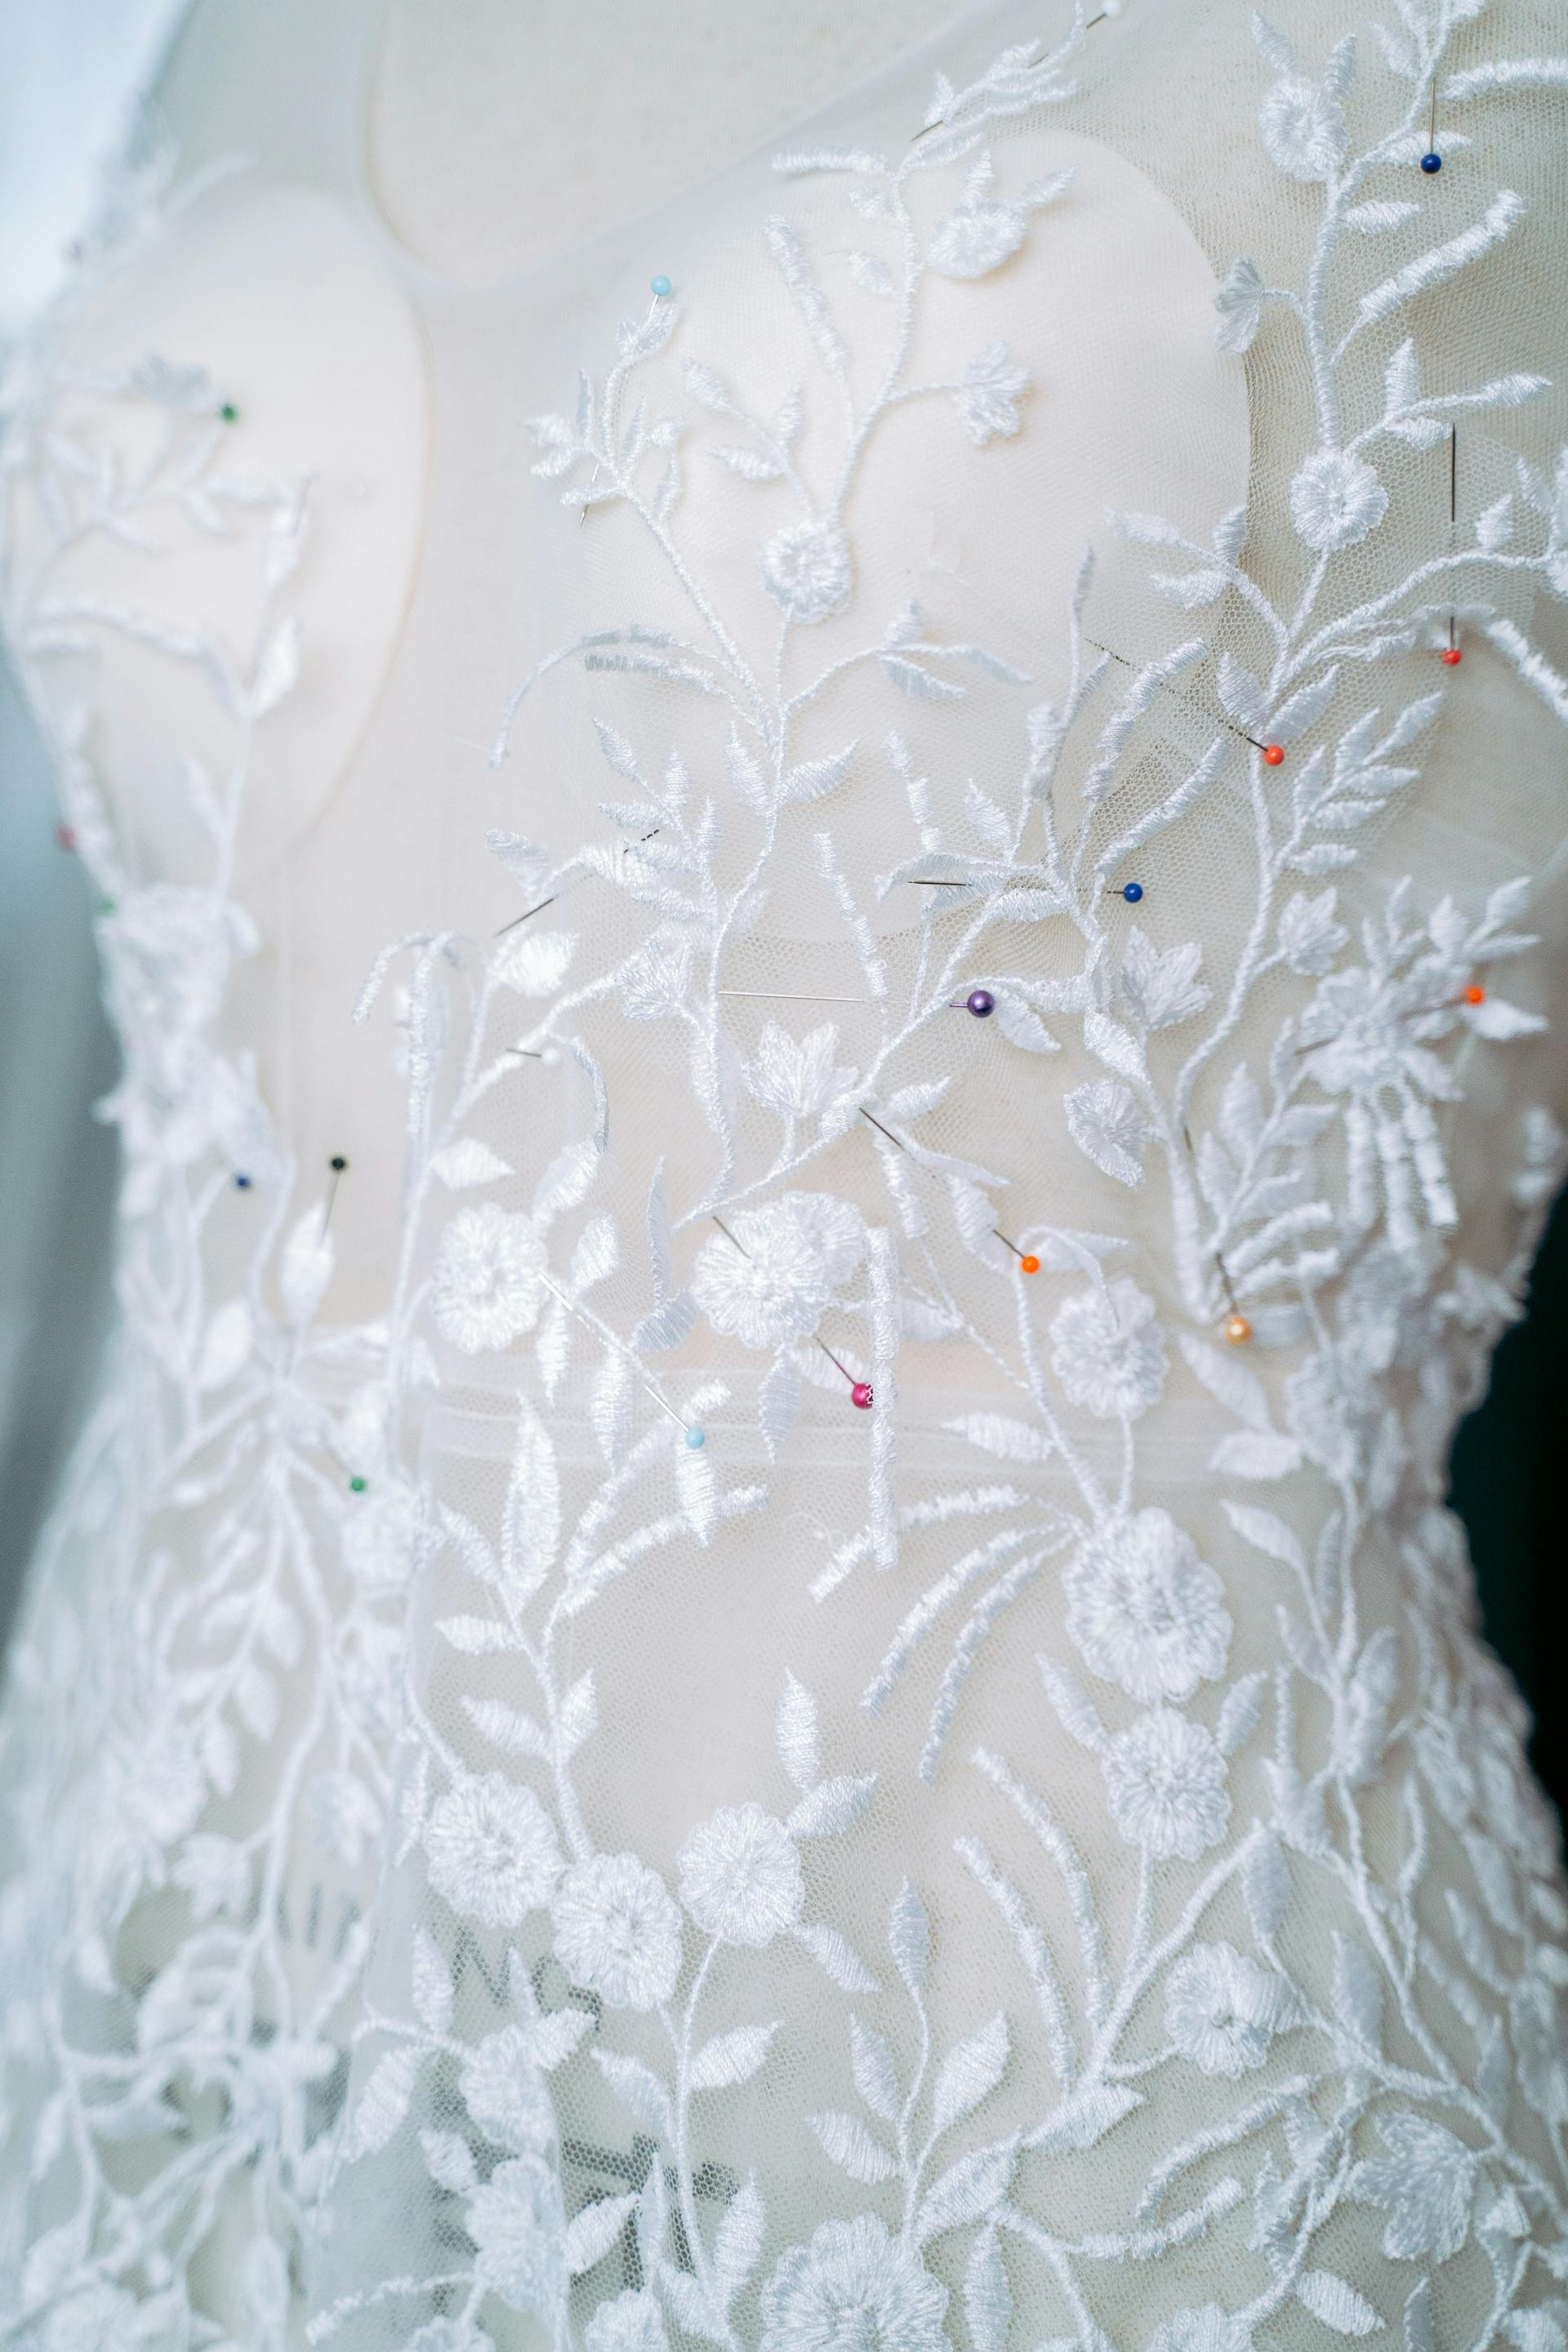 Un gros plan d'une robe de mariée | Source : Pexels